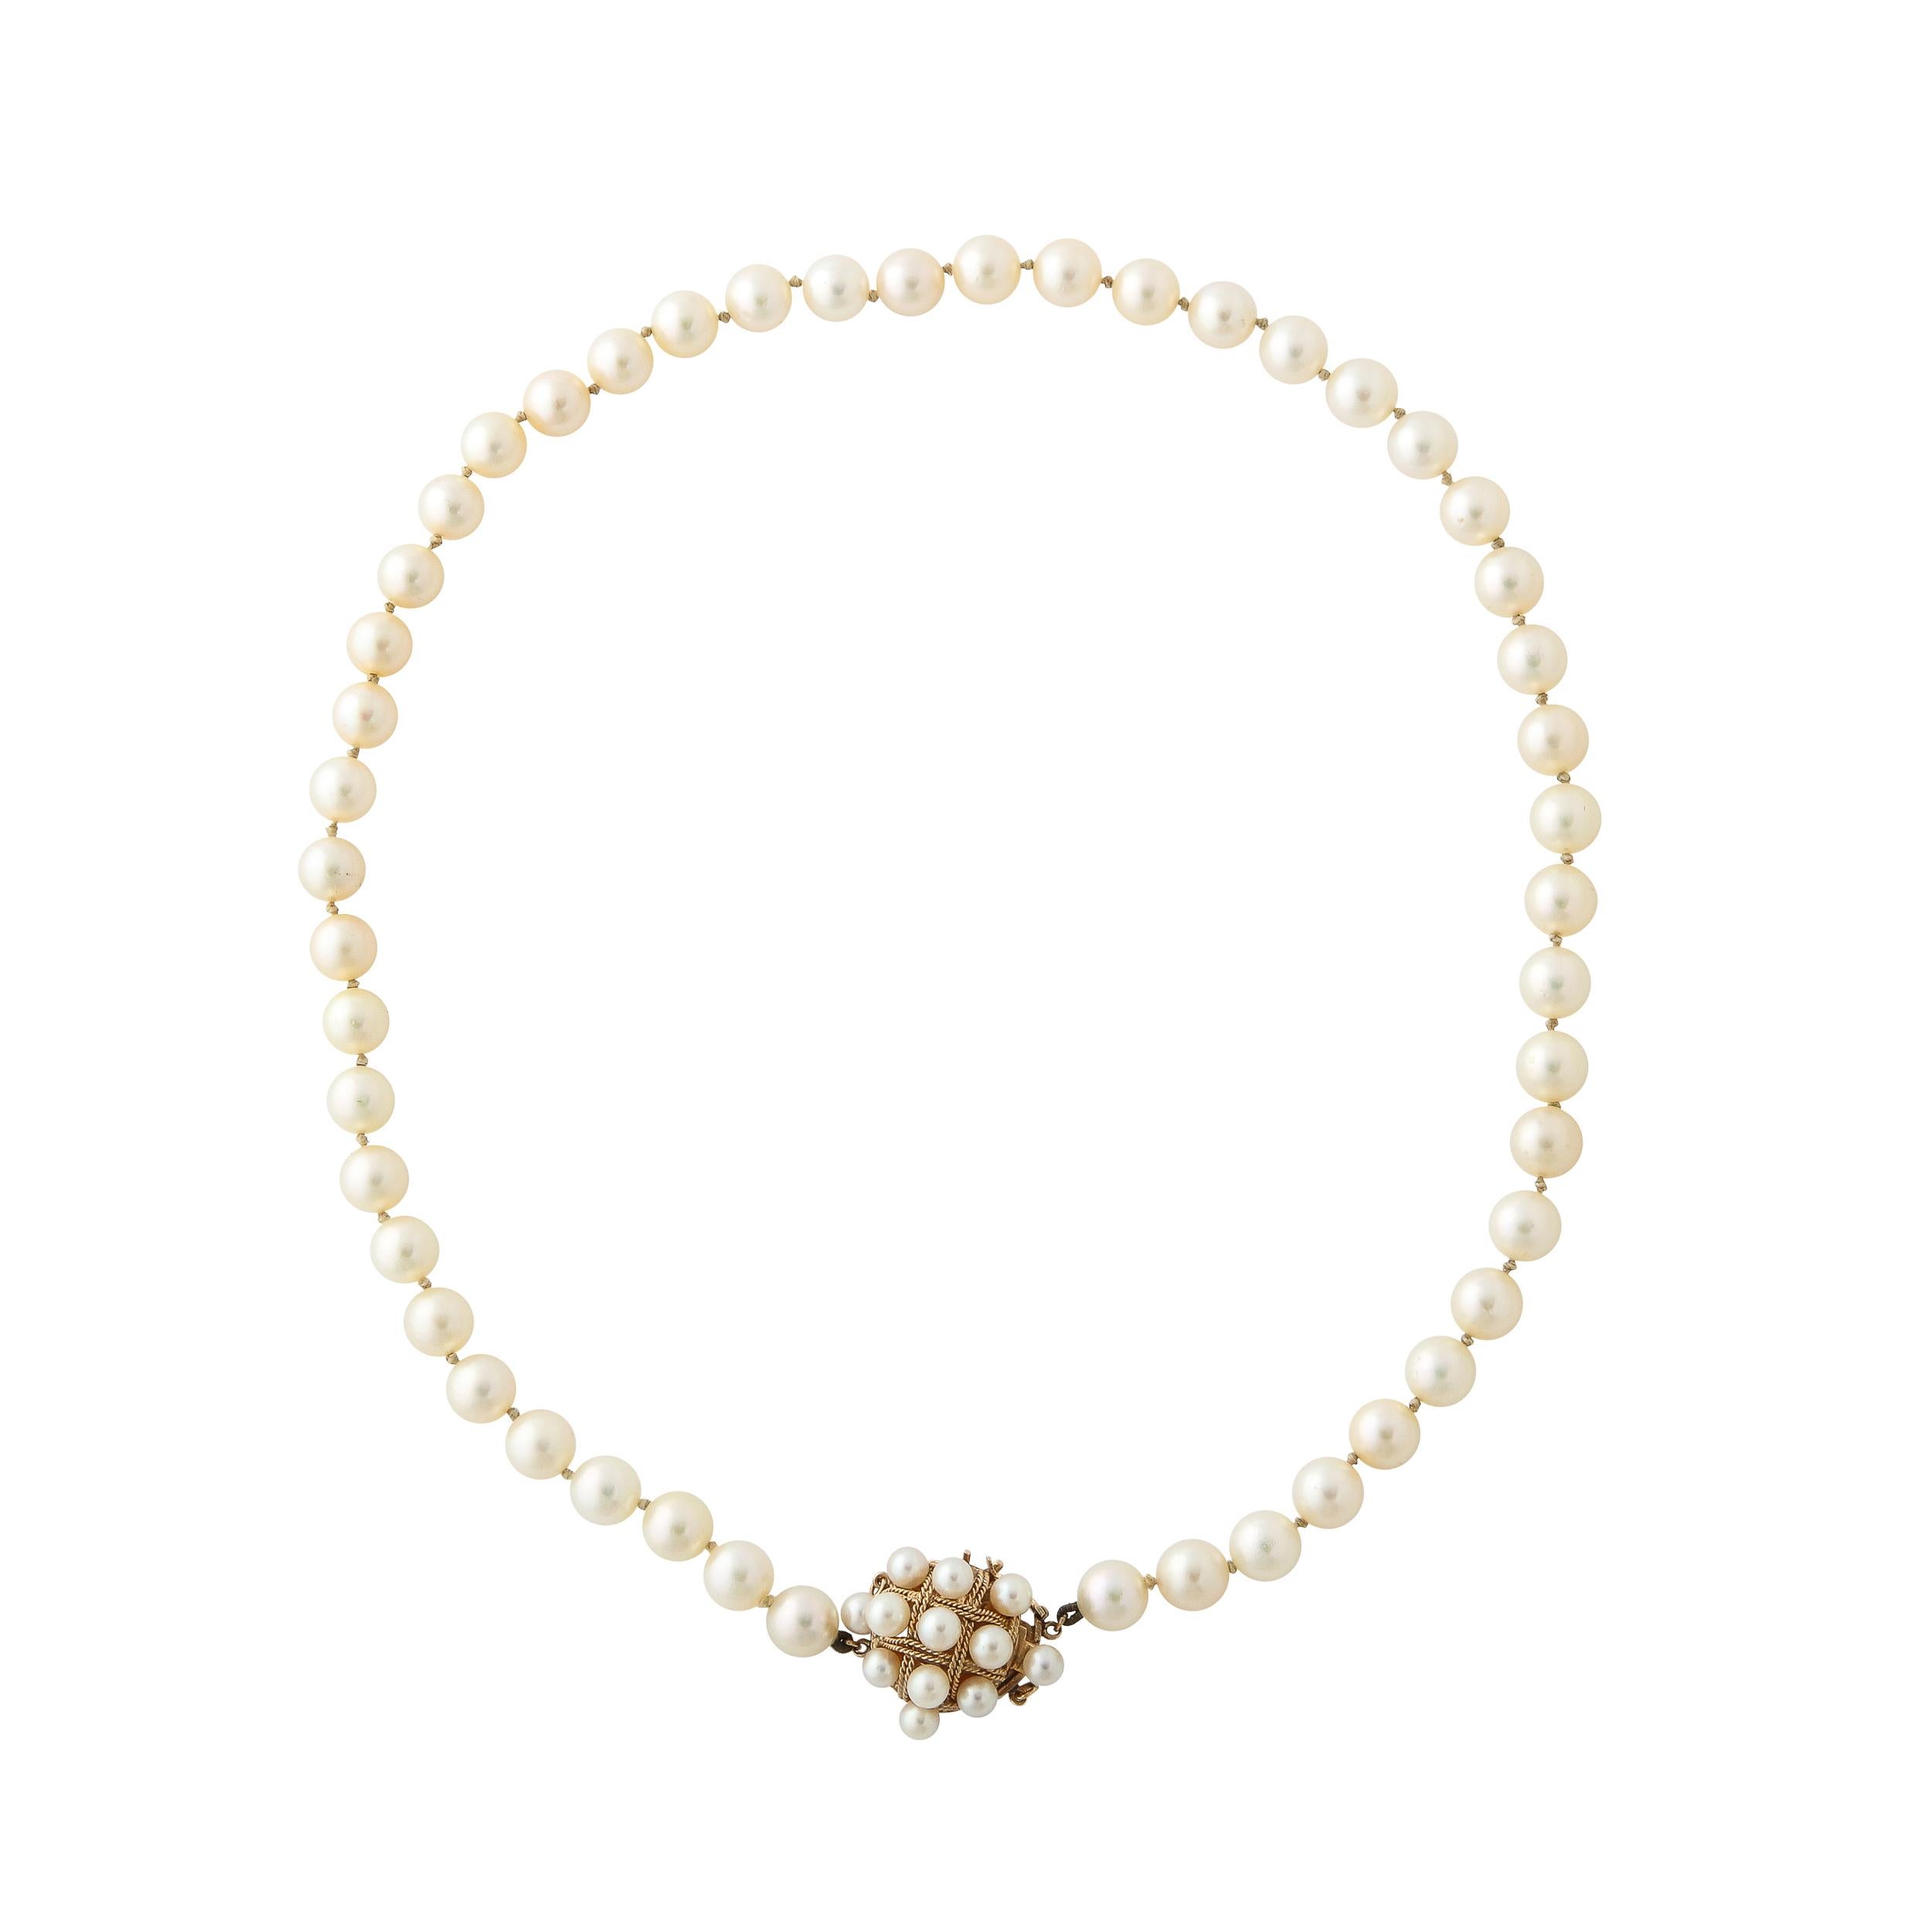 Die Mid Century Modernist Halskette hat 49 6 mm Perlen und verfügt über einen Verschluss mit einem geflochtenen 14k gedrehten Seil Design in einer Kreuzschraffur Form und ist mit 11 kleineren Perlen besetzt.  Je nach Anlass kann man es mit dem